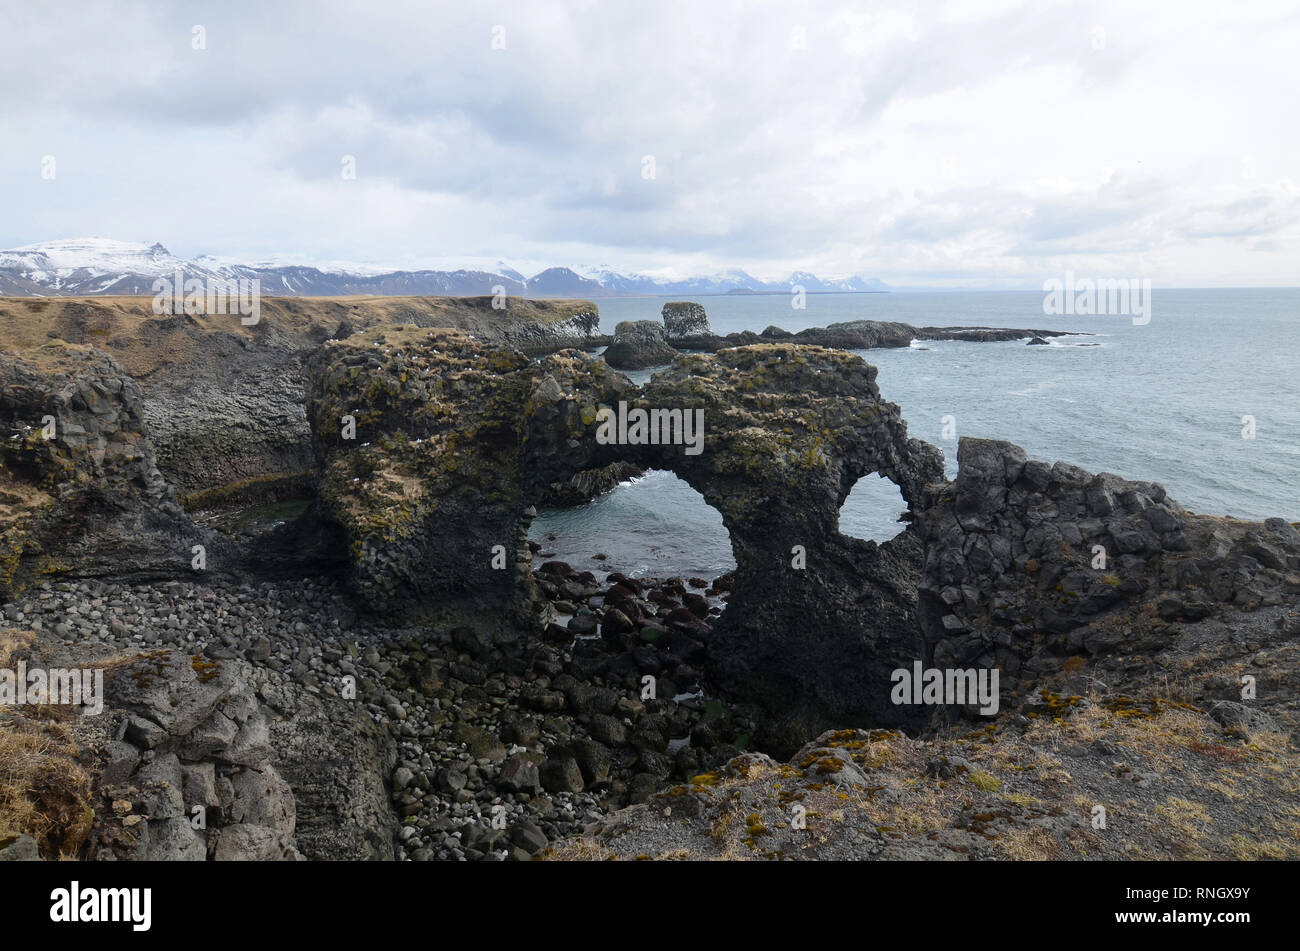 Arco costiero rock formazione fatta di pietra lavica sulla costa. Foto Stock